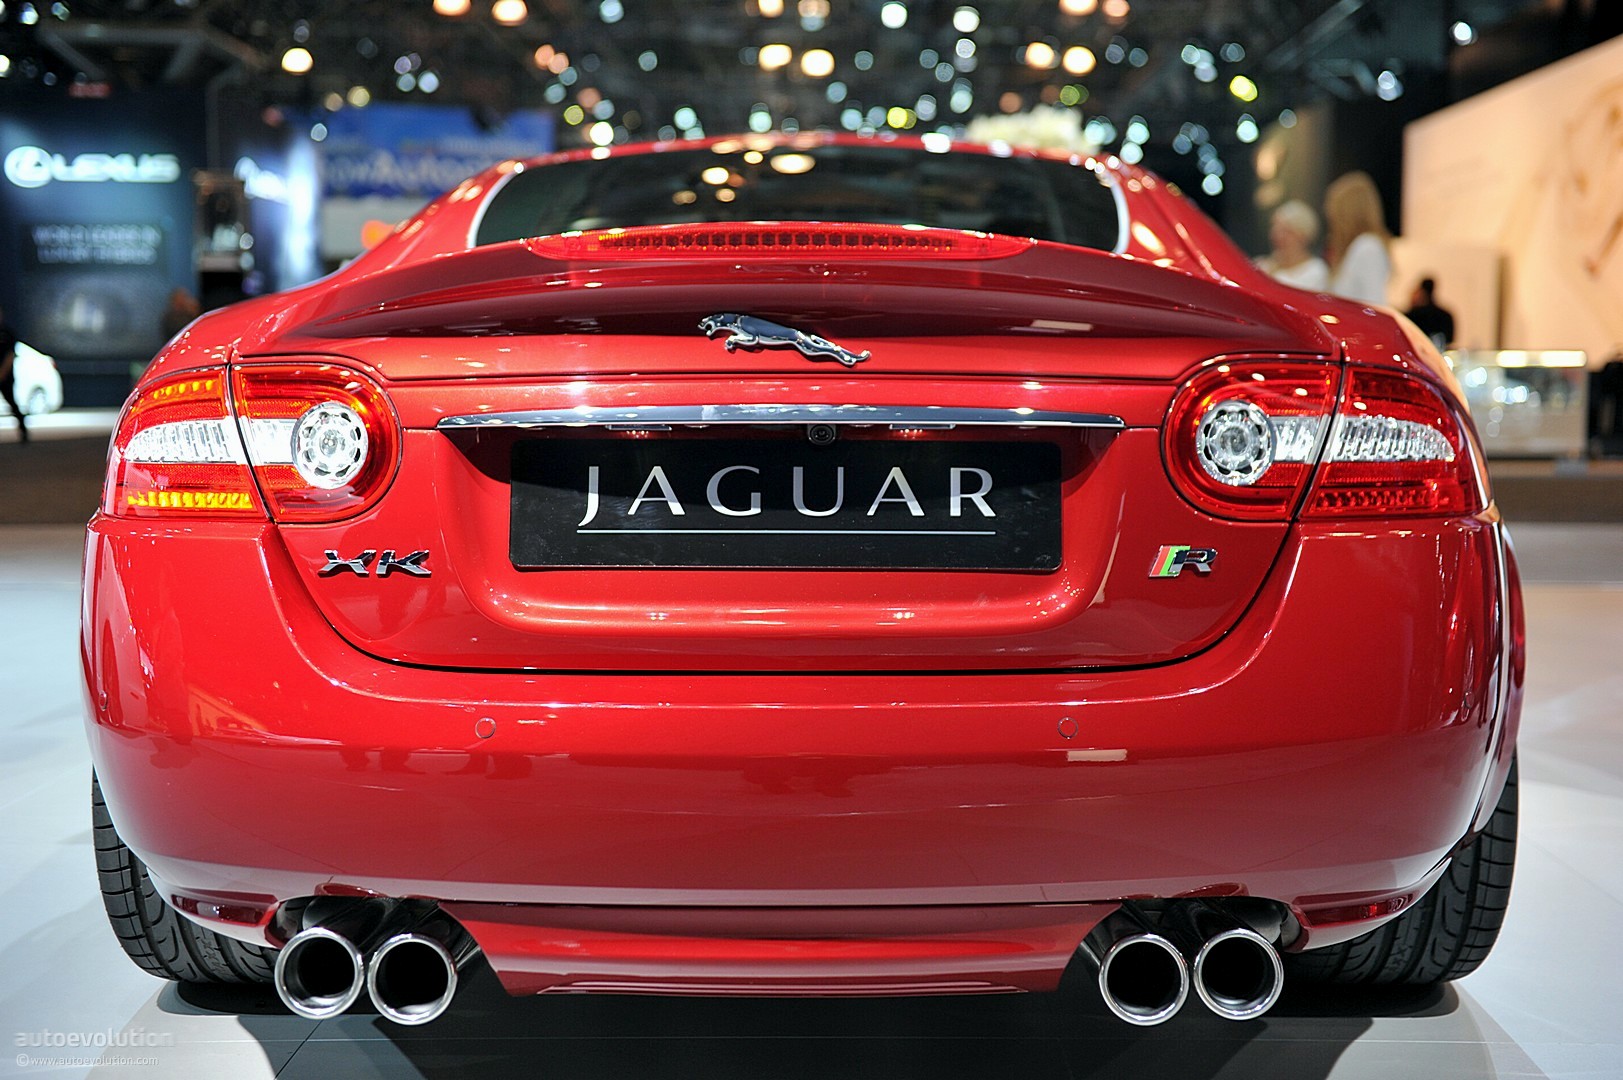 NYIAS 2011: Jaguar XKR Coupe Live Photos - autoevolution